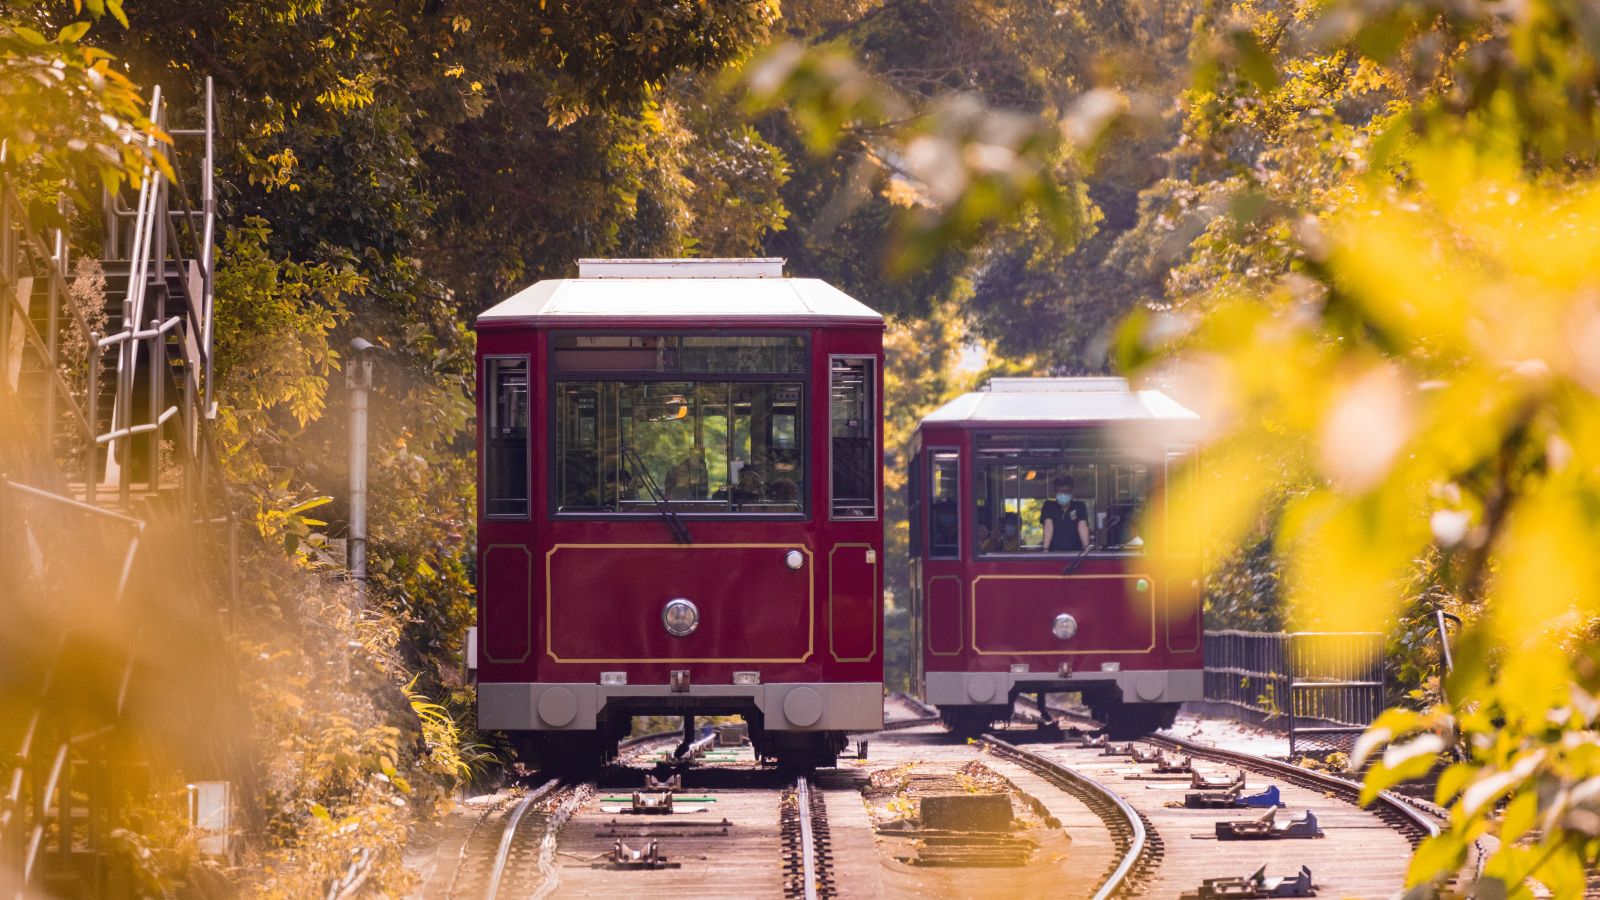 Old style tram in fall season 